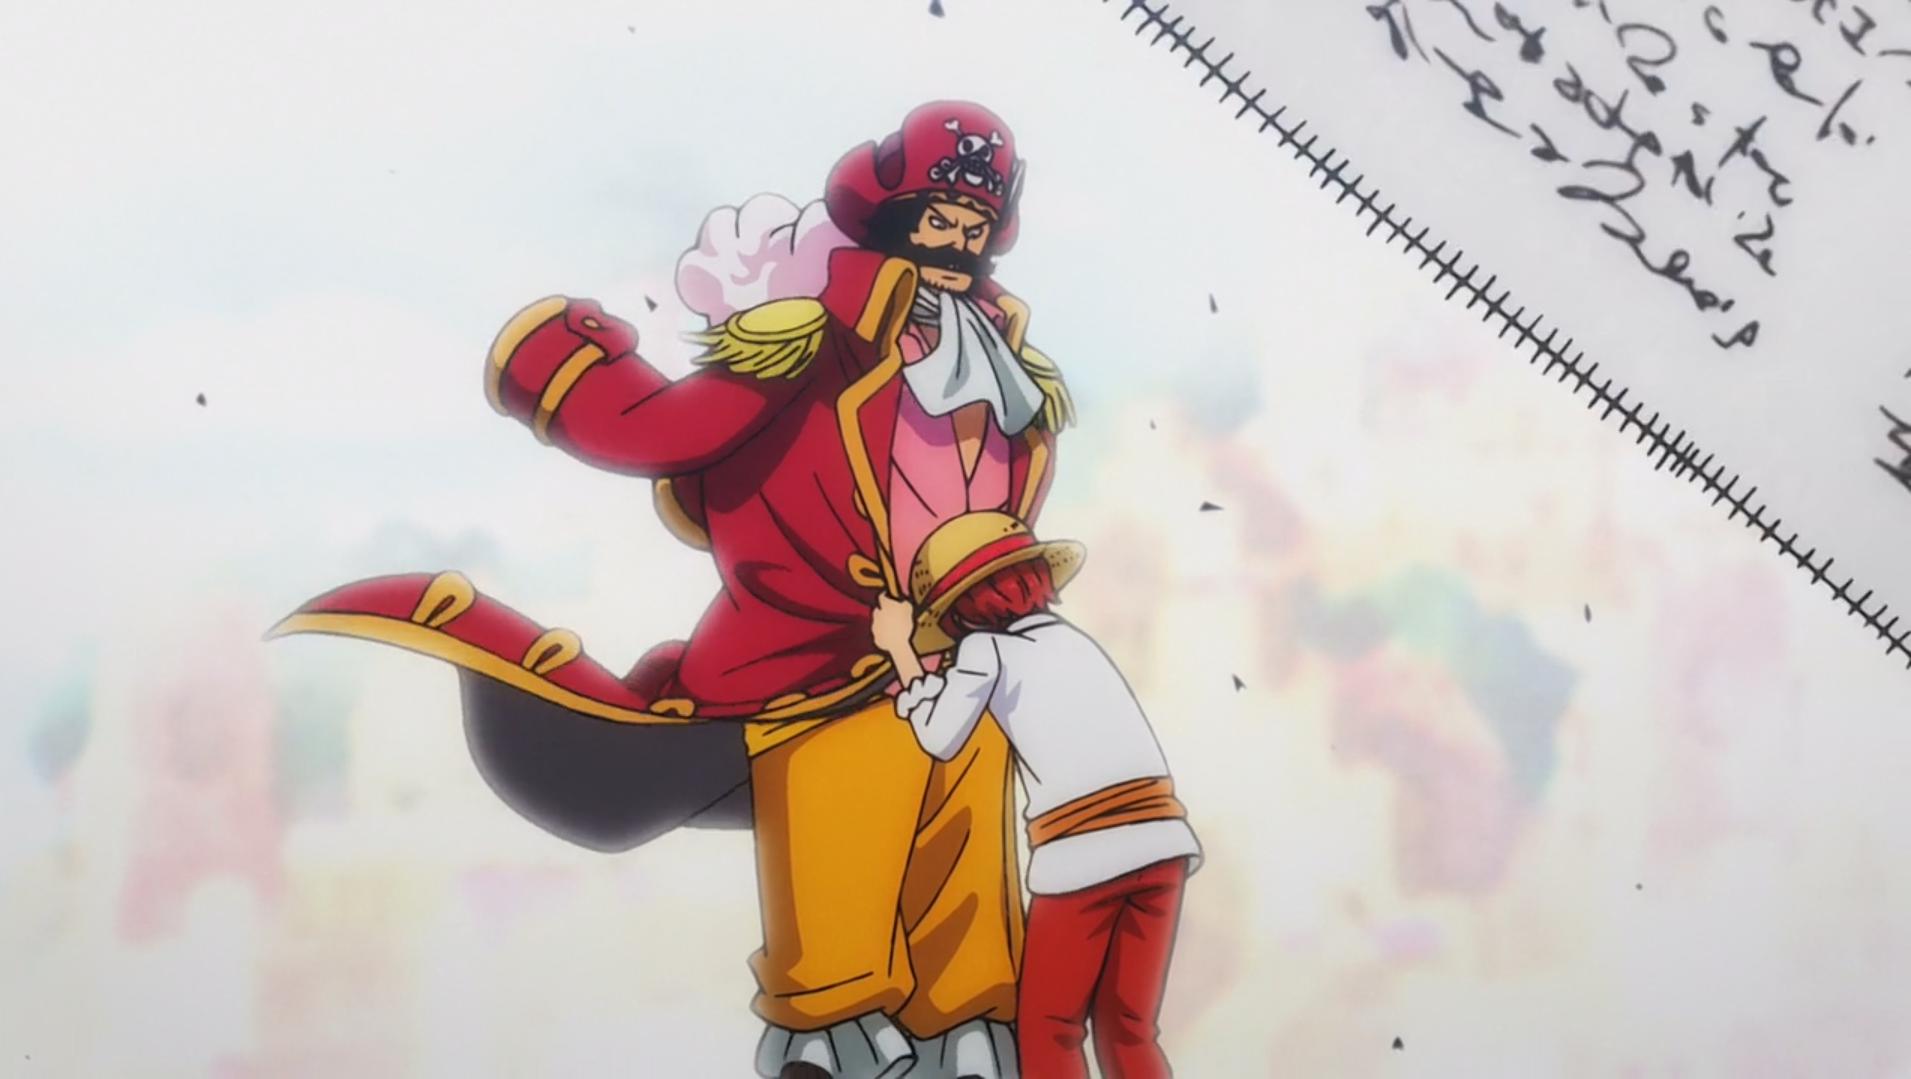 One Piece Episódio 969: O Fim dos Piratas Roger – Resumo e Análise